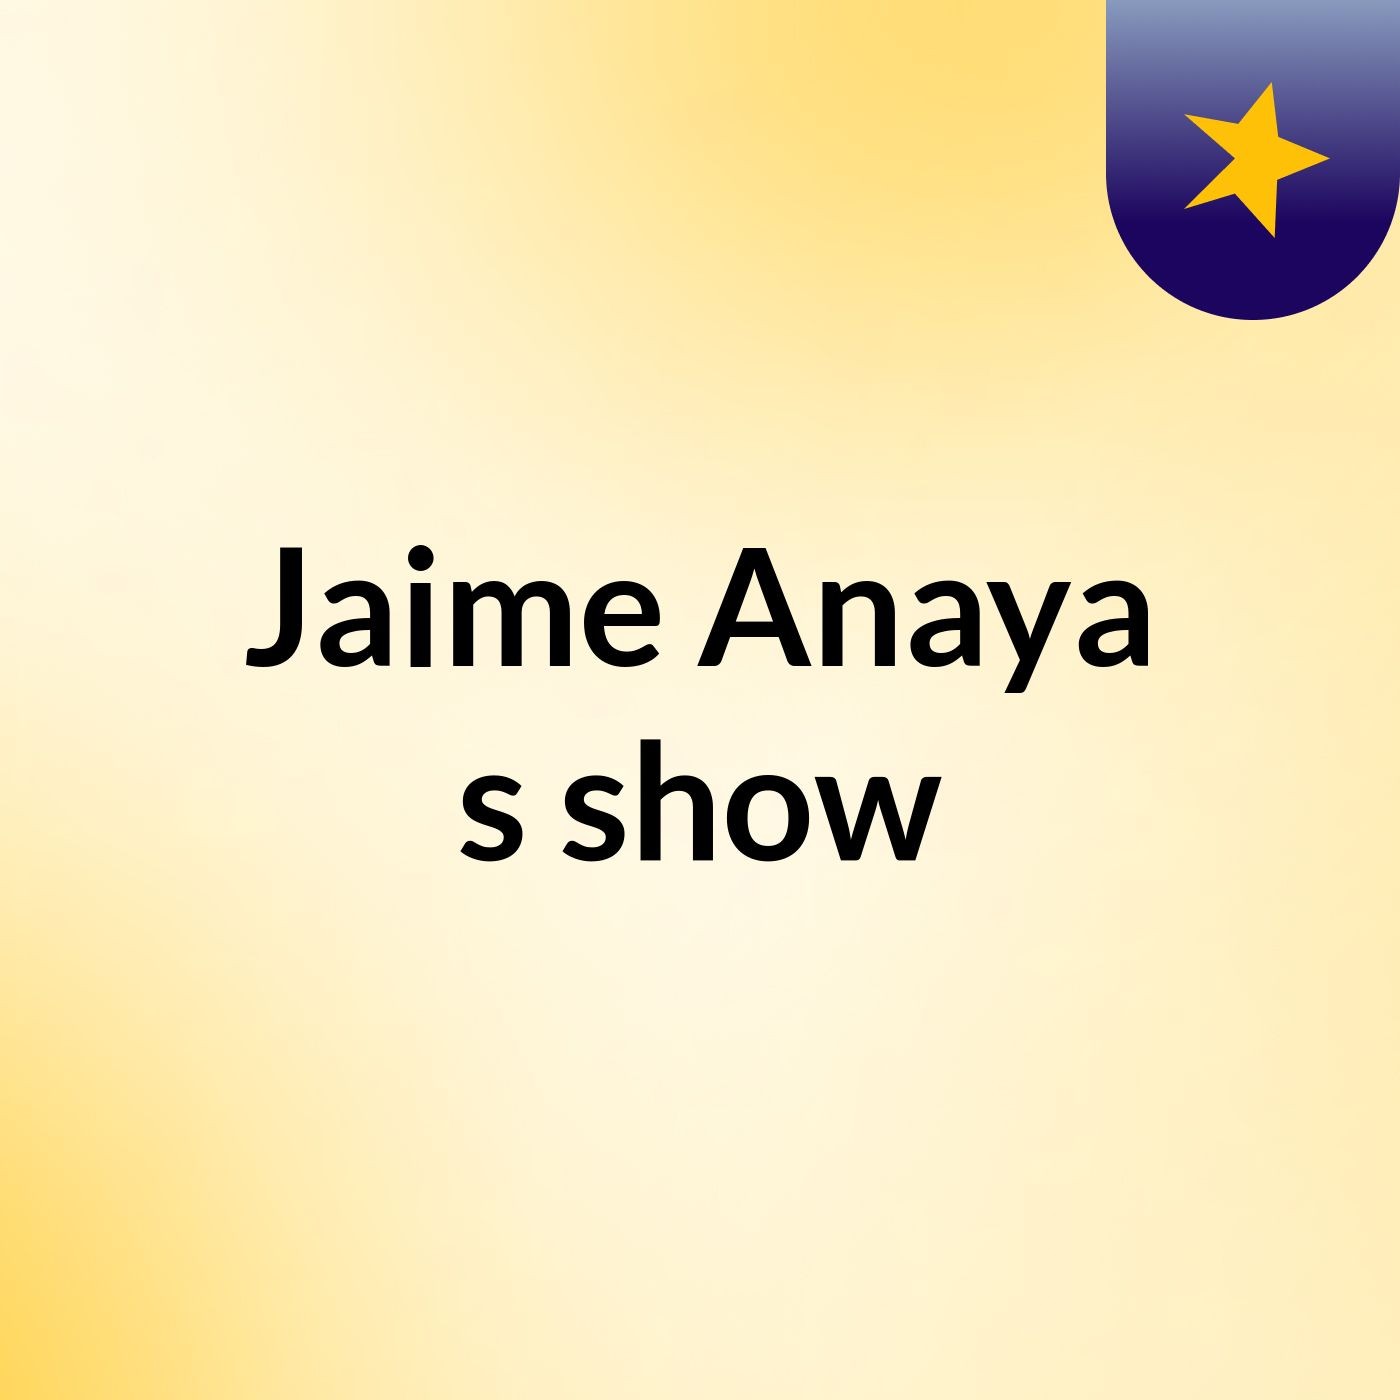 Jaime Anaya's show